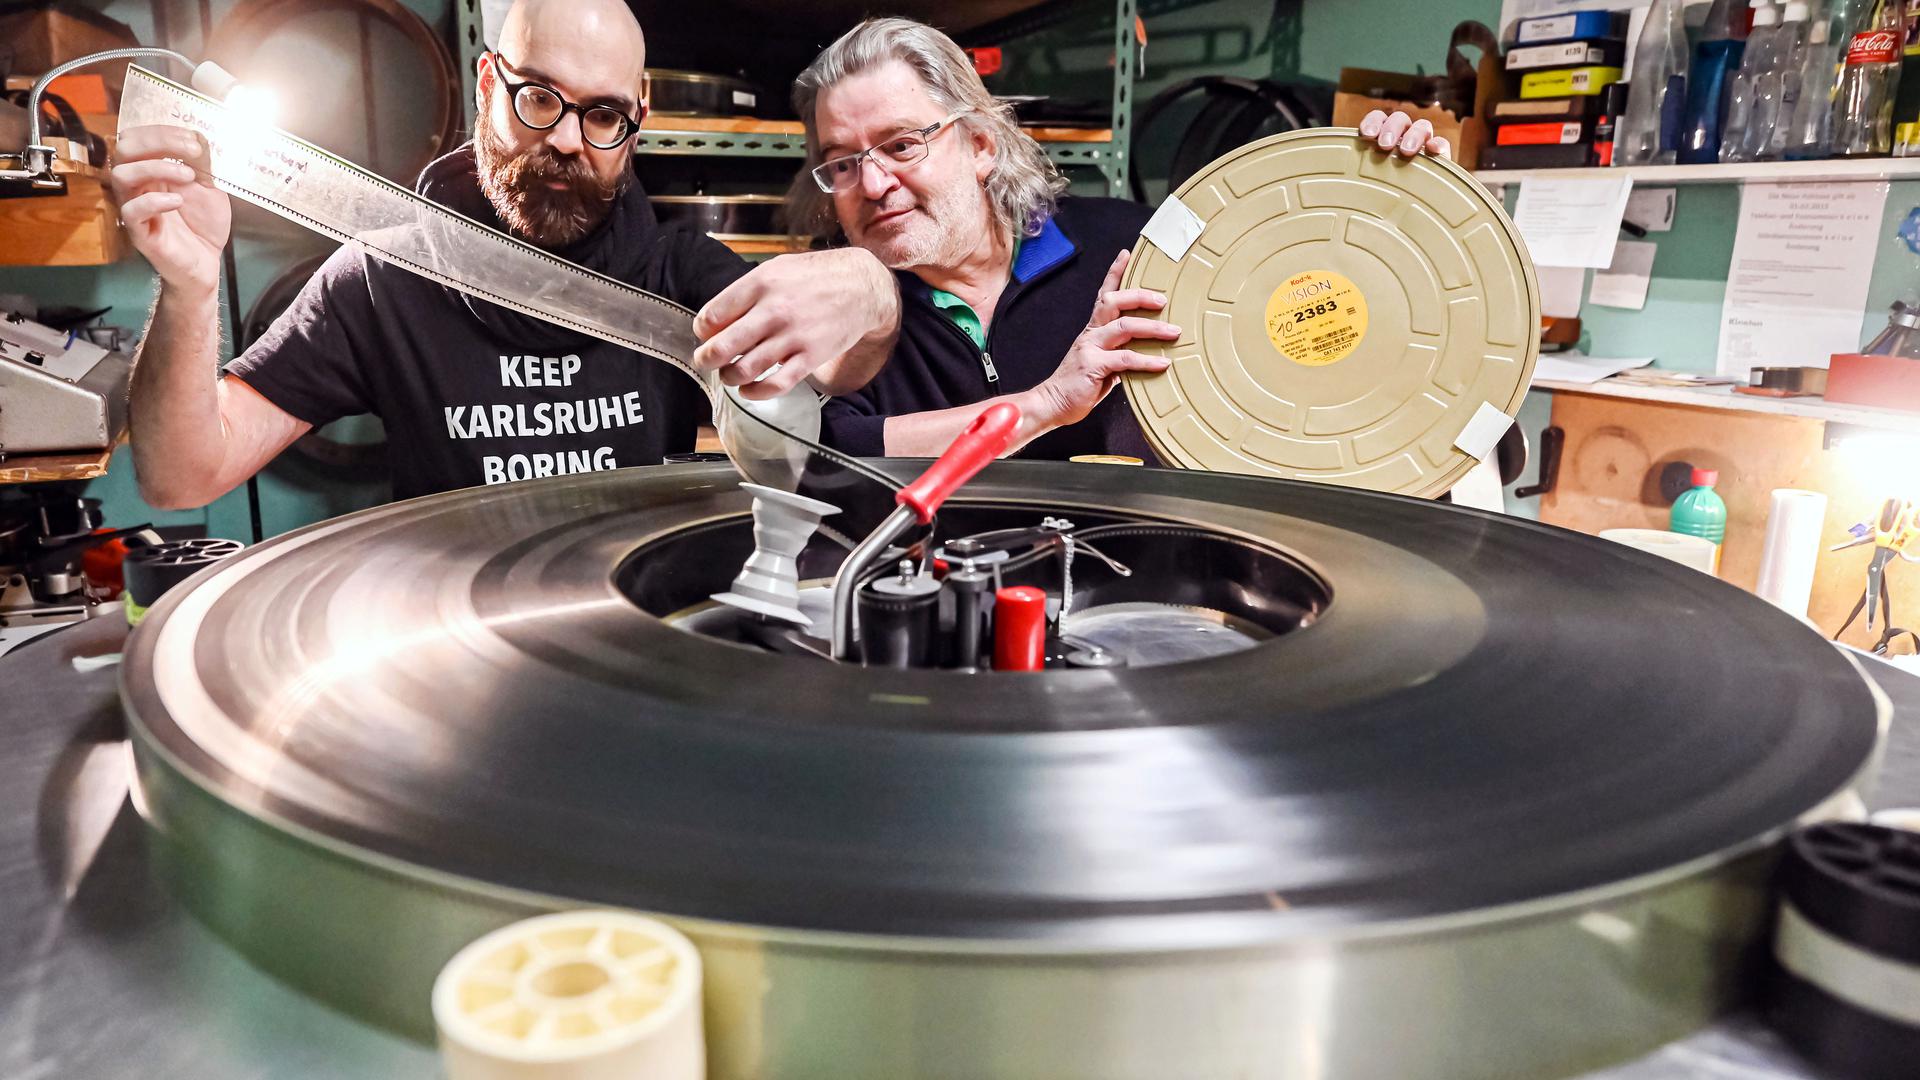 Eine Minute Film wiegt ein dreiviertel Kilo: Die Schauburg Karlsruhe pflegt das klassische 70mm-Format
